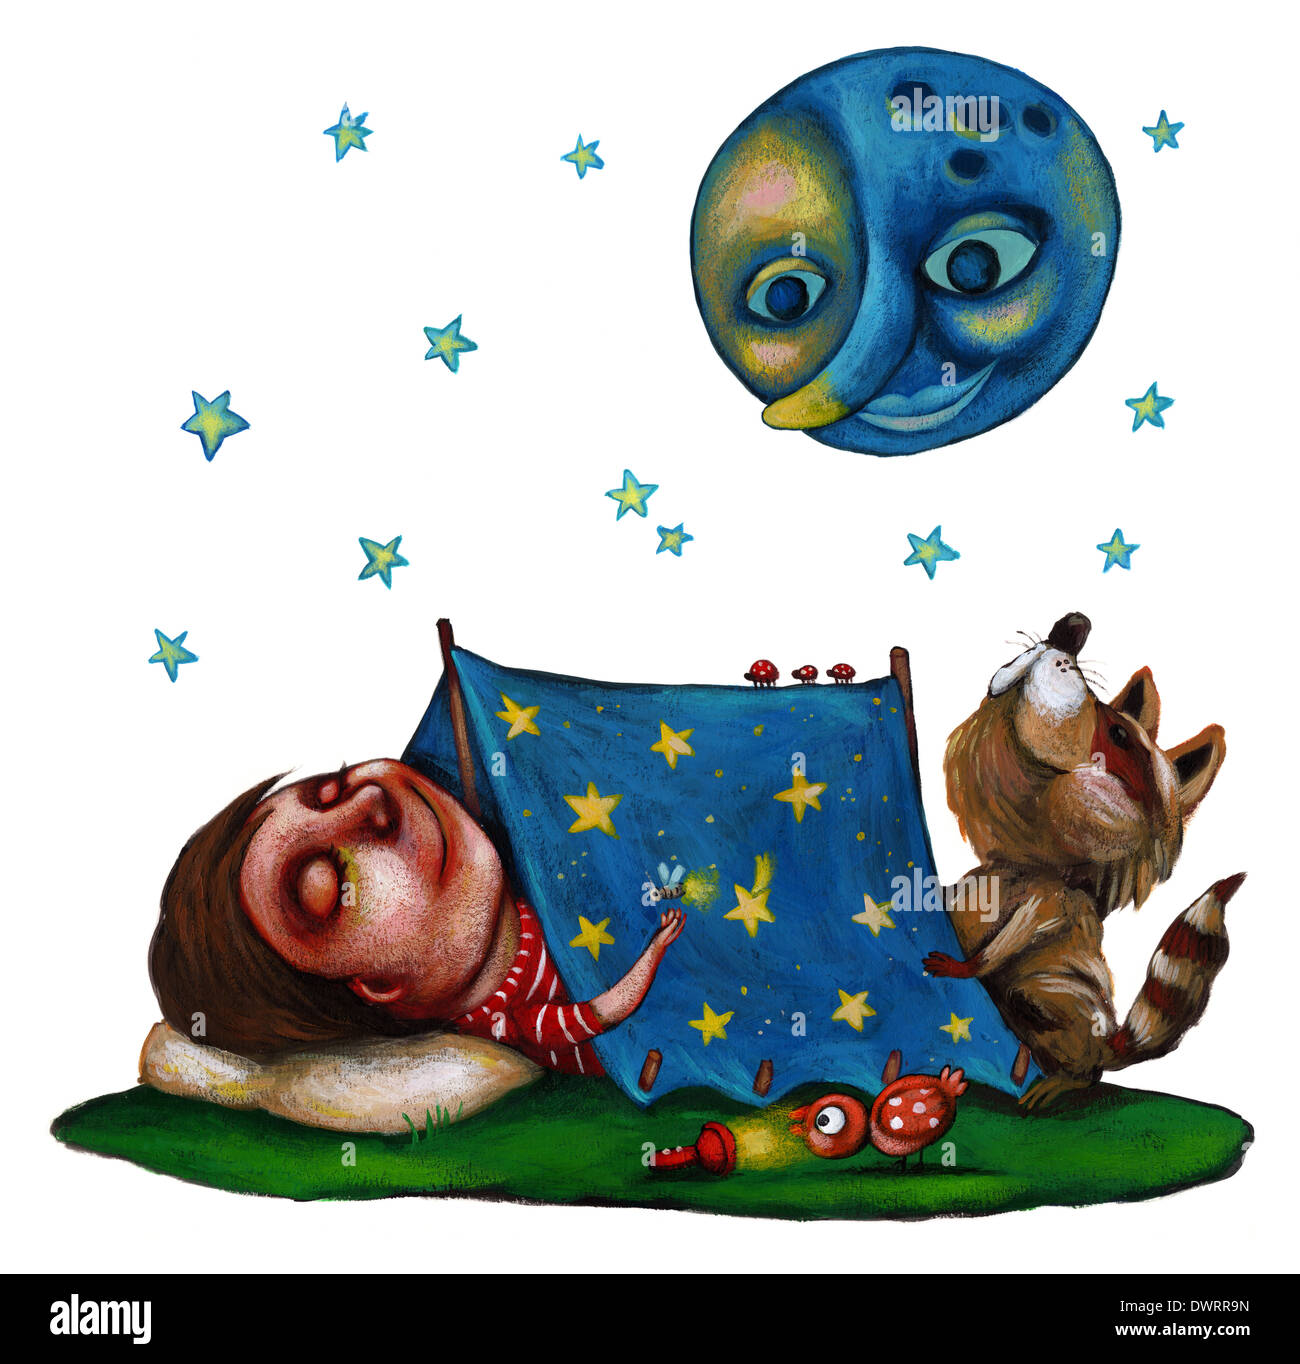 Image d'illustration du garçon endormi dans la tente sous lune représentant fantasy Banque D'Images